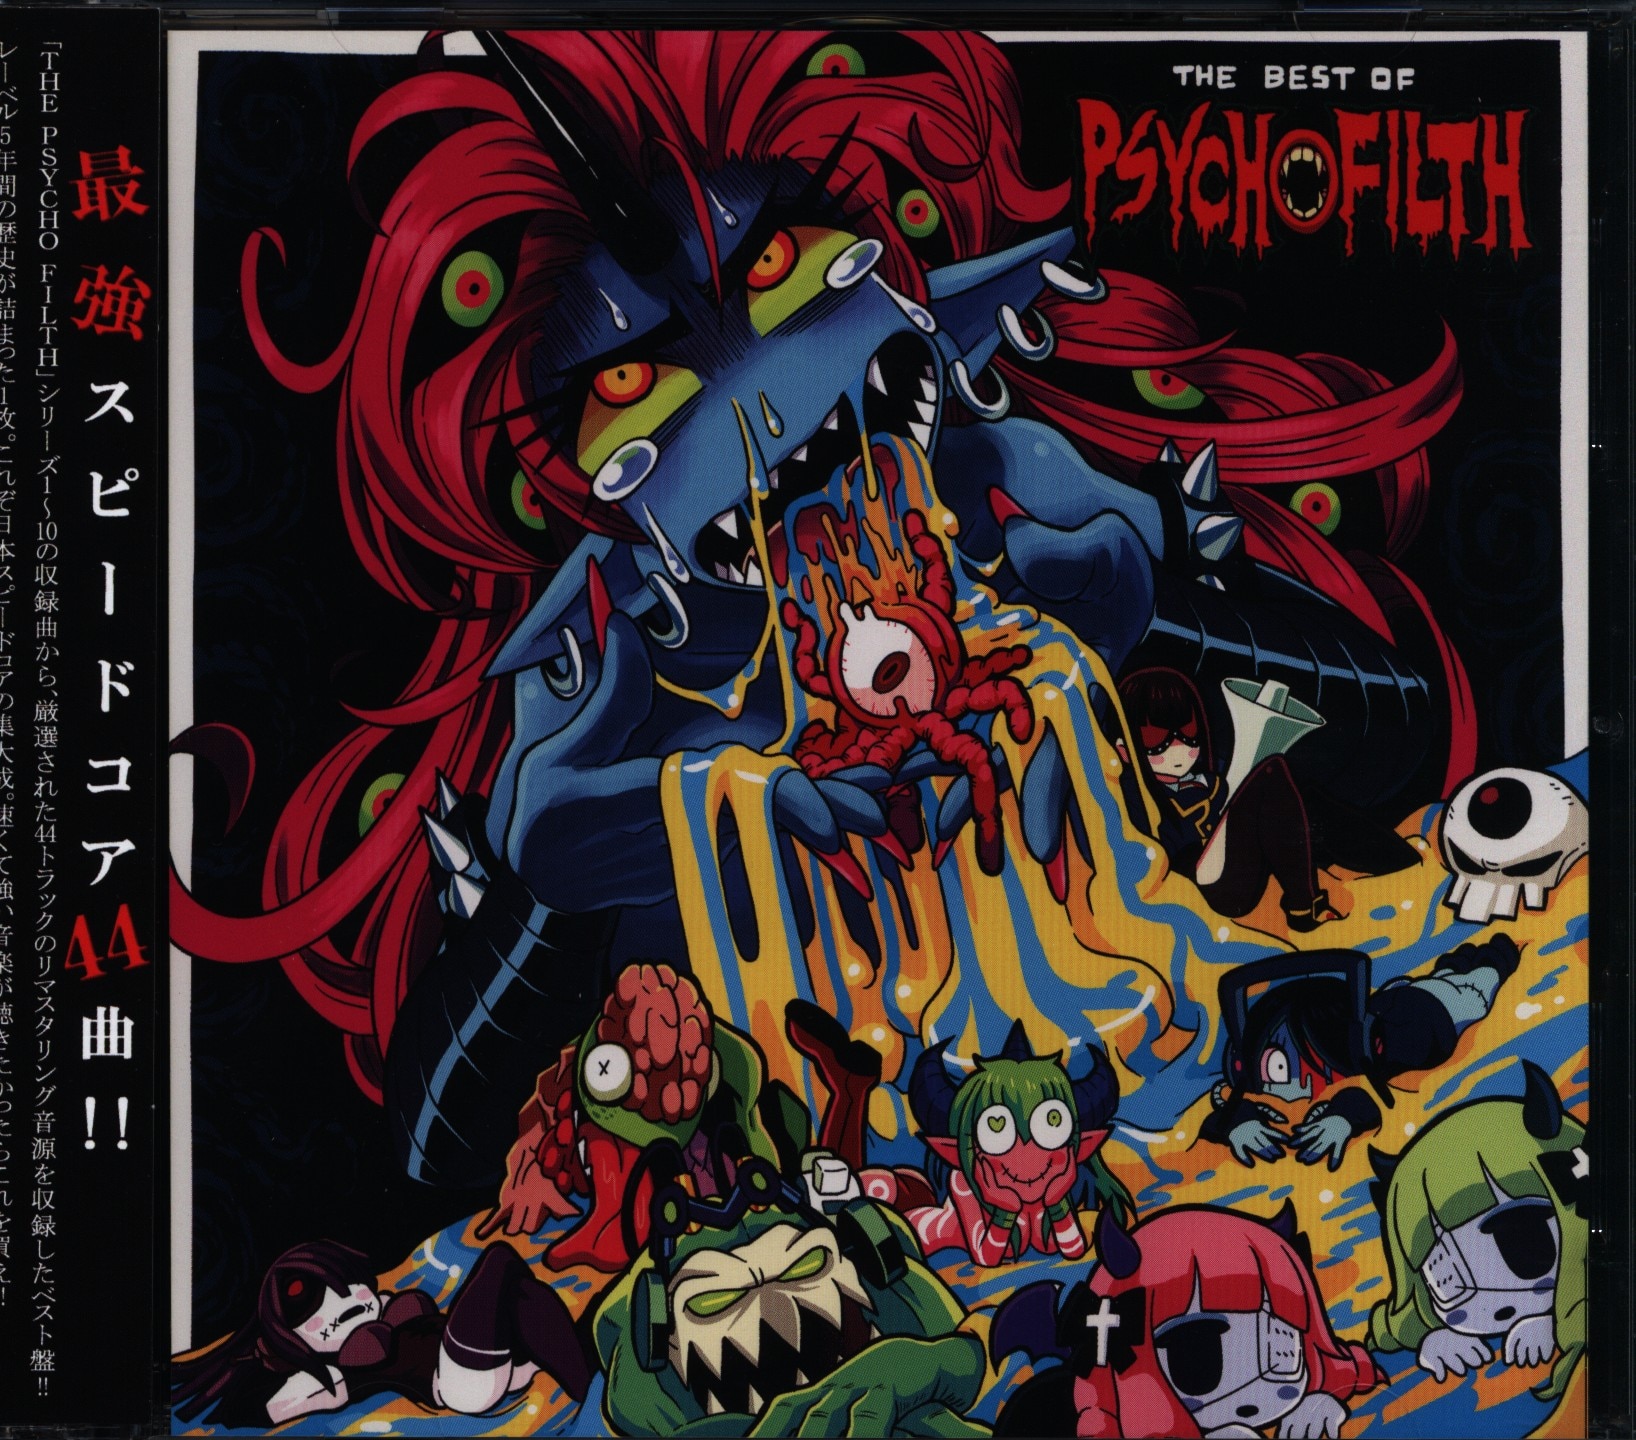 販売証明書付き Psycho Filth Records コンプリートセット (一部除く) - CD